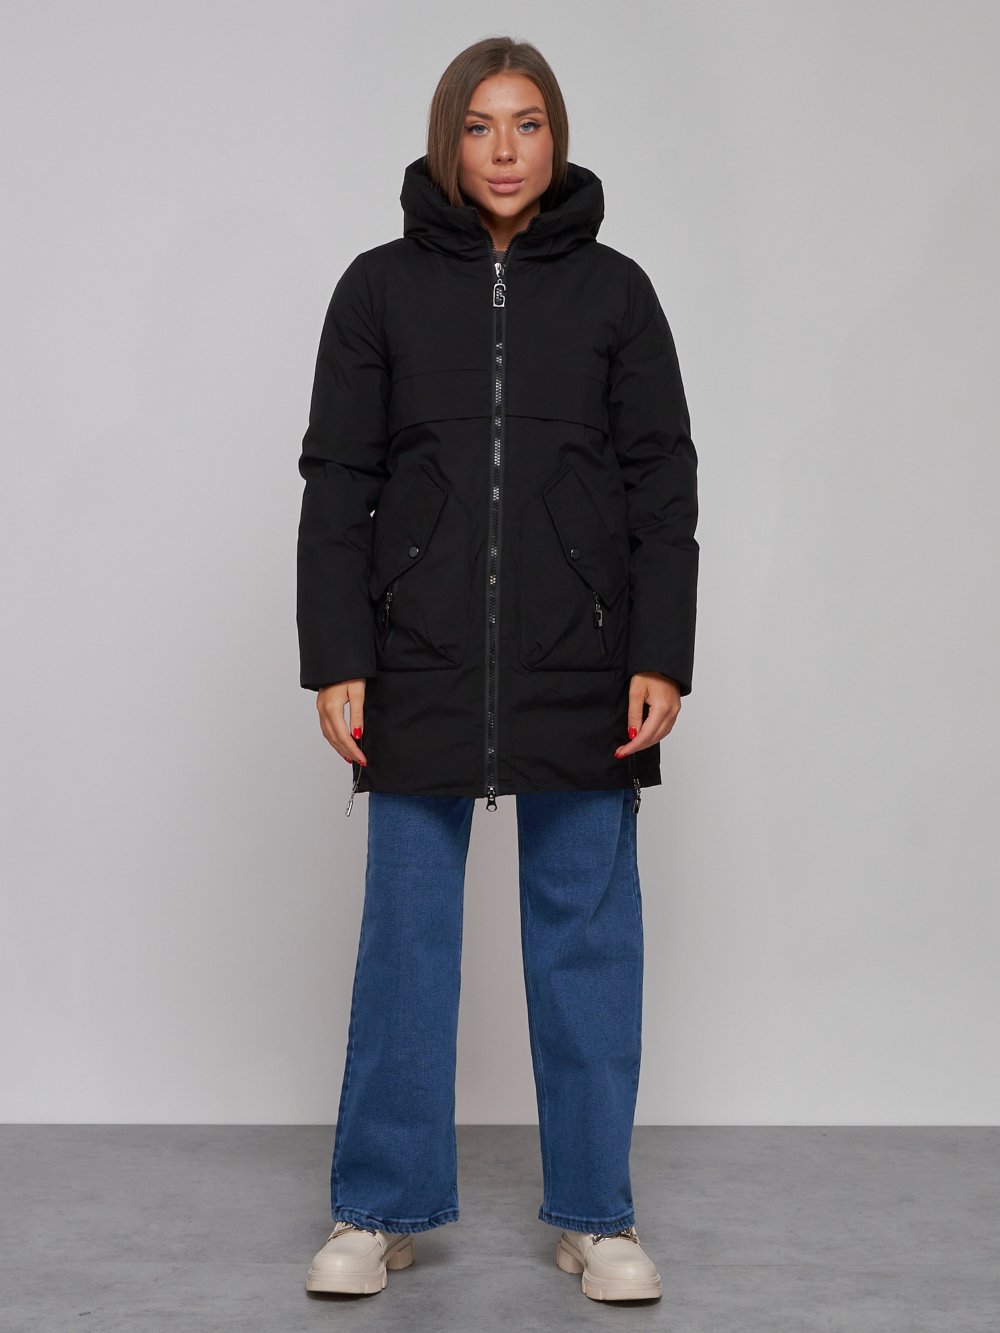 Купить оптом Зимняя женская куртка молодежная с капюшоном черного цвета 58622Ch в Екатеринбурге